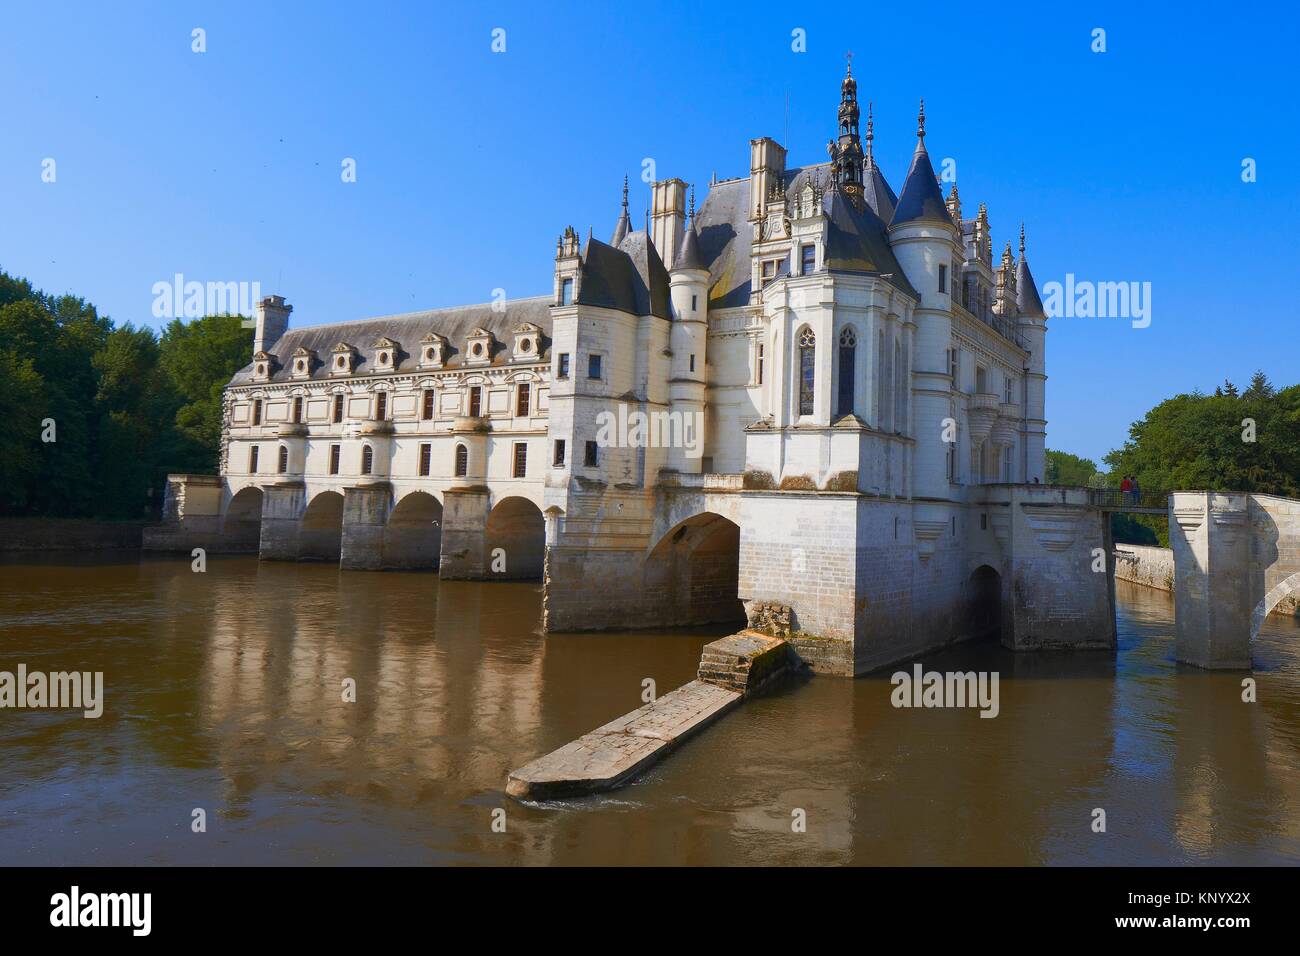 Chenonceau, Castle, Chateau de Chenonceau, Indre-et-Loire, Cher River, Pays de la Loire, Loire Valley, UNESCO World Heritage Site, France. Stock Photo